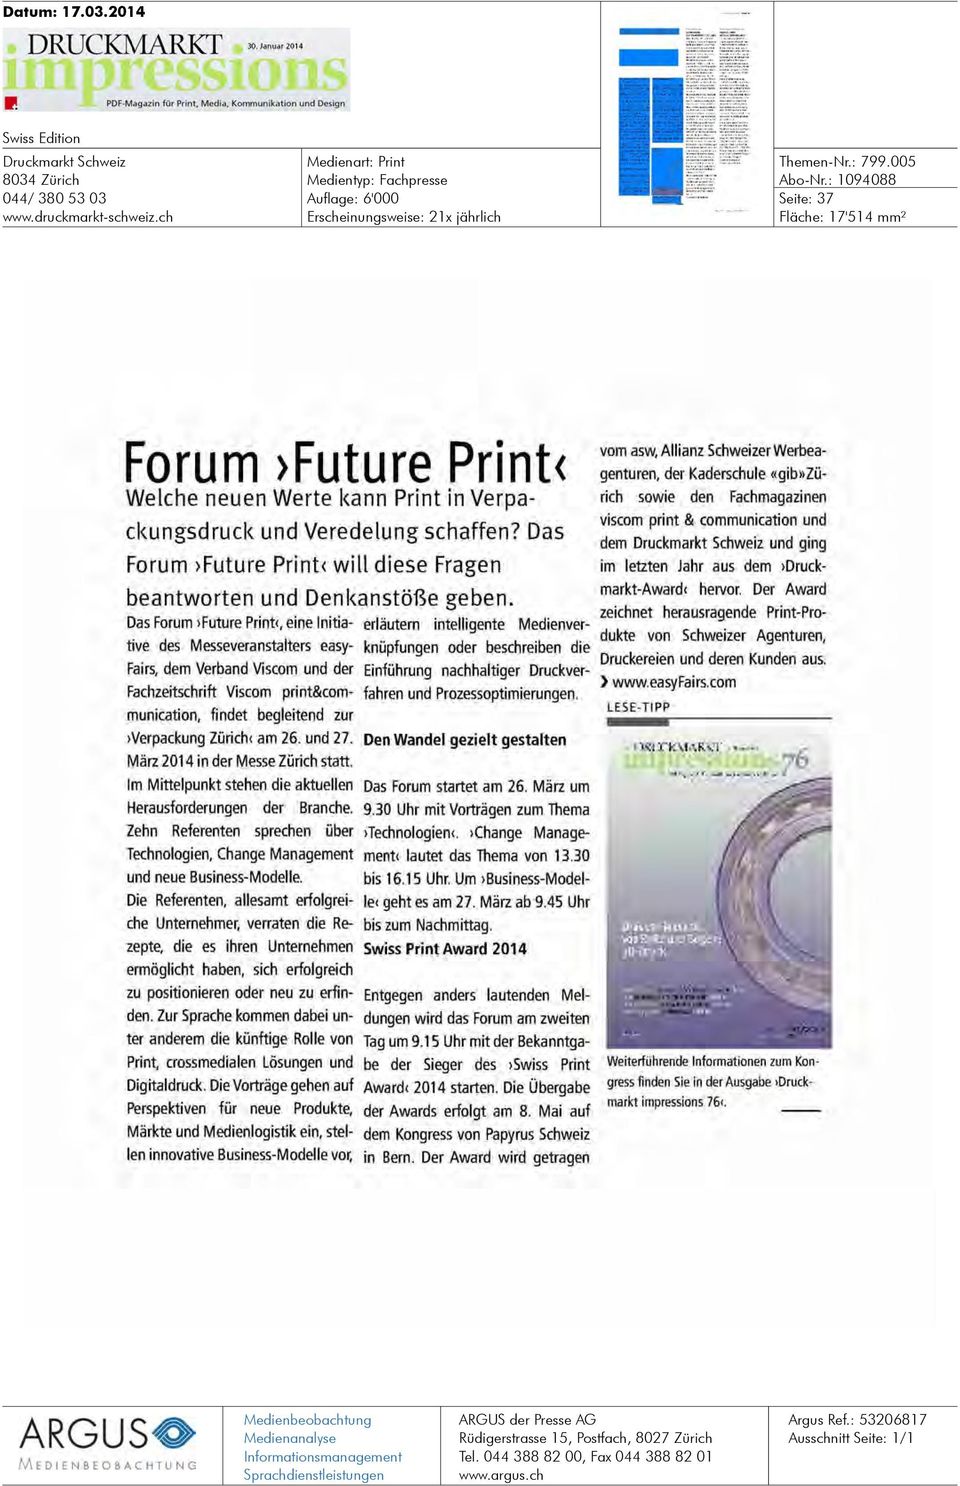 Das Forum >Future Print< will diese Fragen beantworten und Denkanstöße geben.